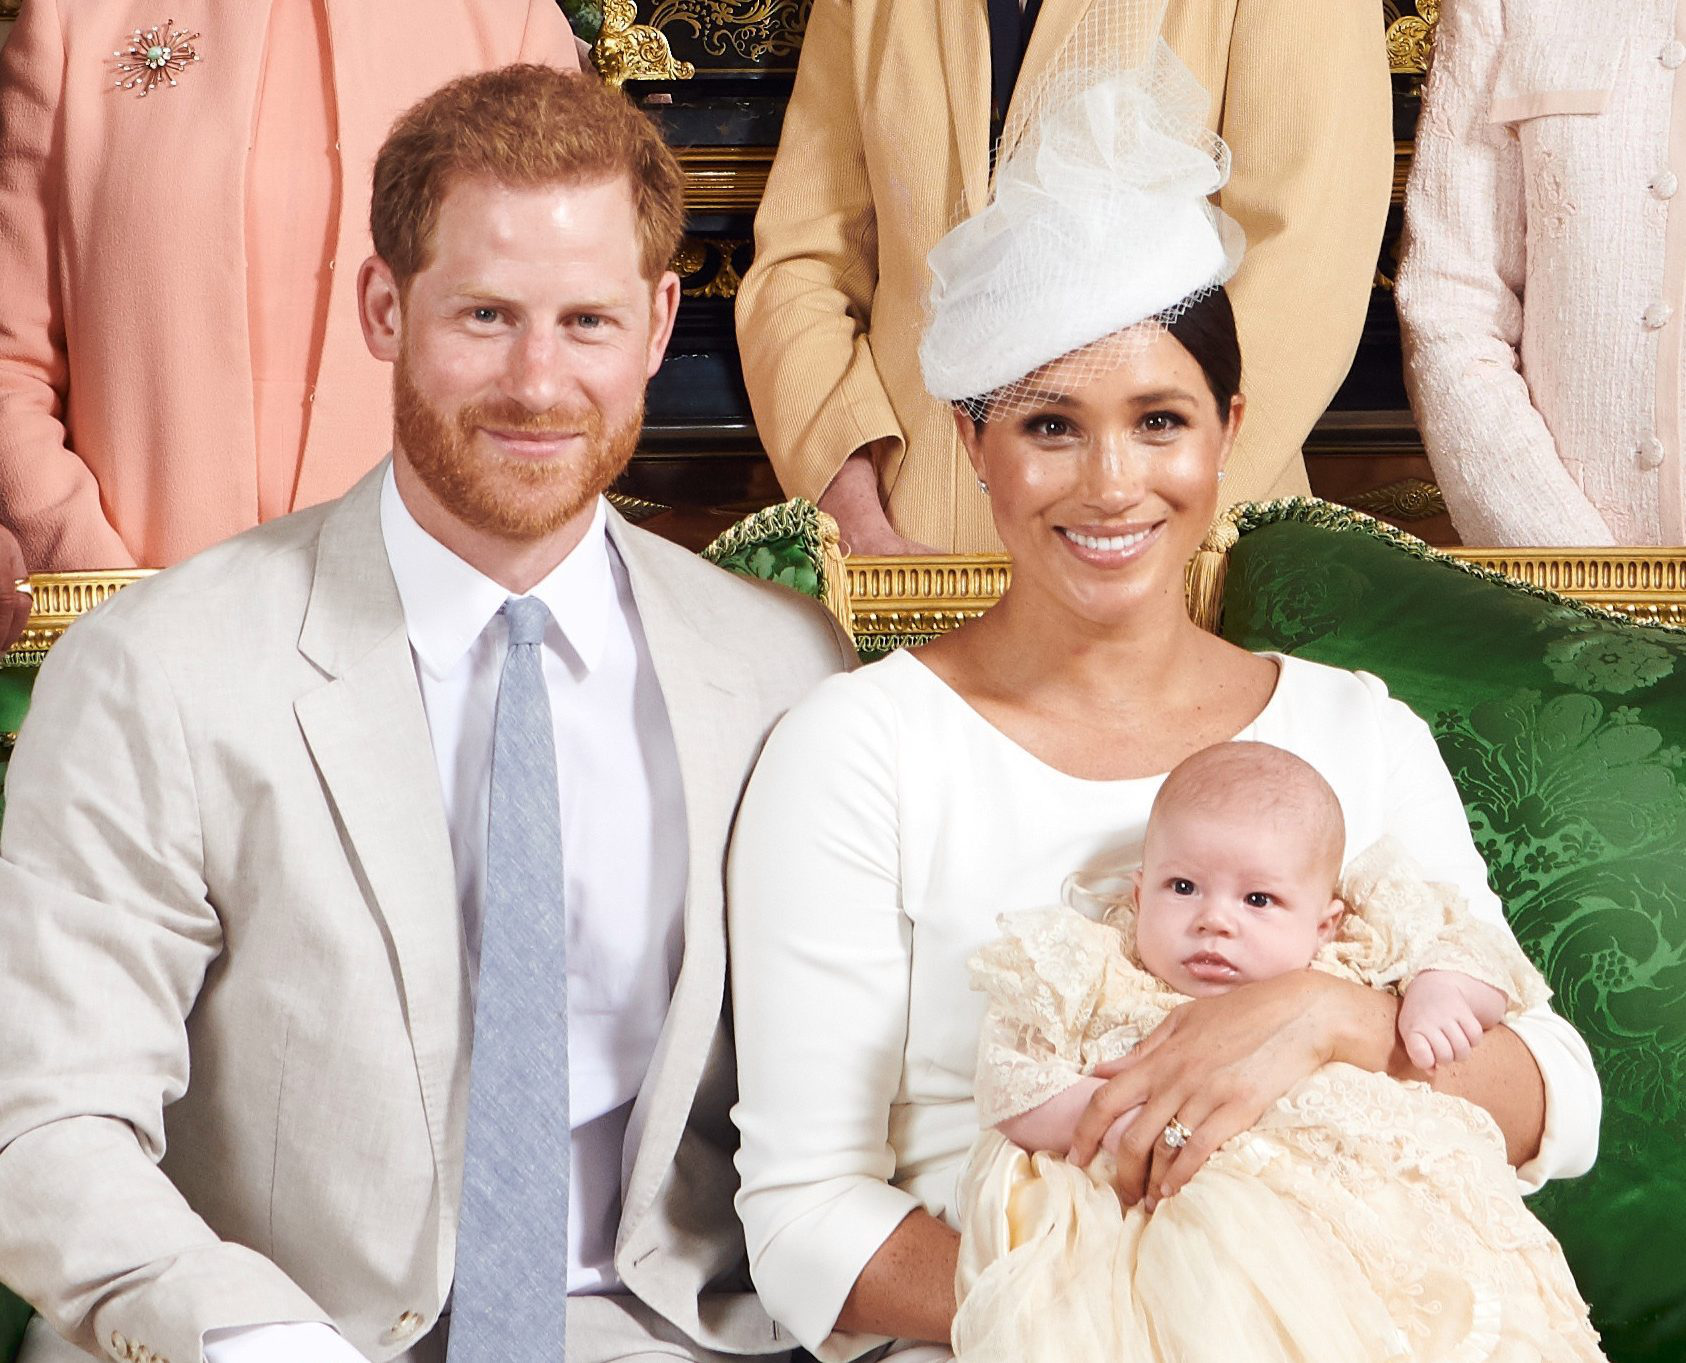 婴儿房21万,孕妇服333万,英王室已为阿尔奇王子花掉多少钱?